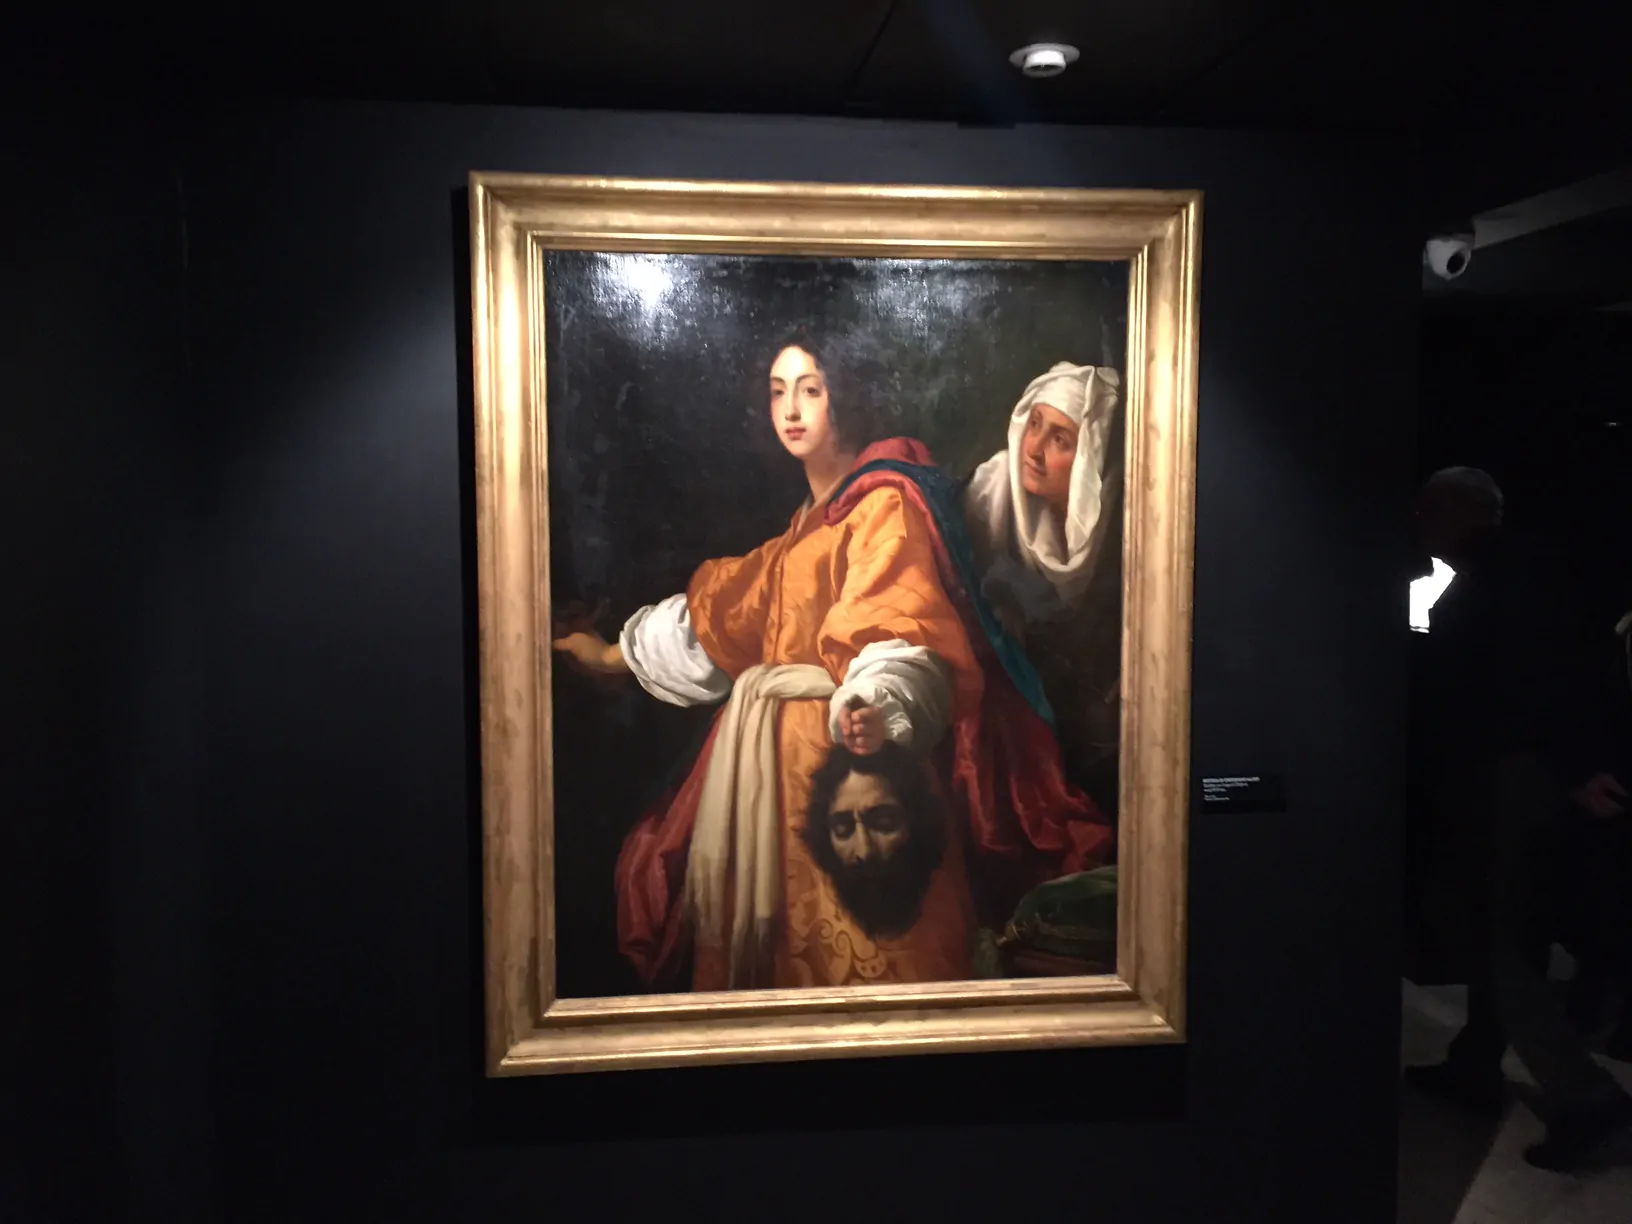 A Venezia la mostra "Attorno a Klimt. Giuditta, eroismo e seduzione"